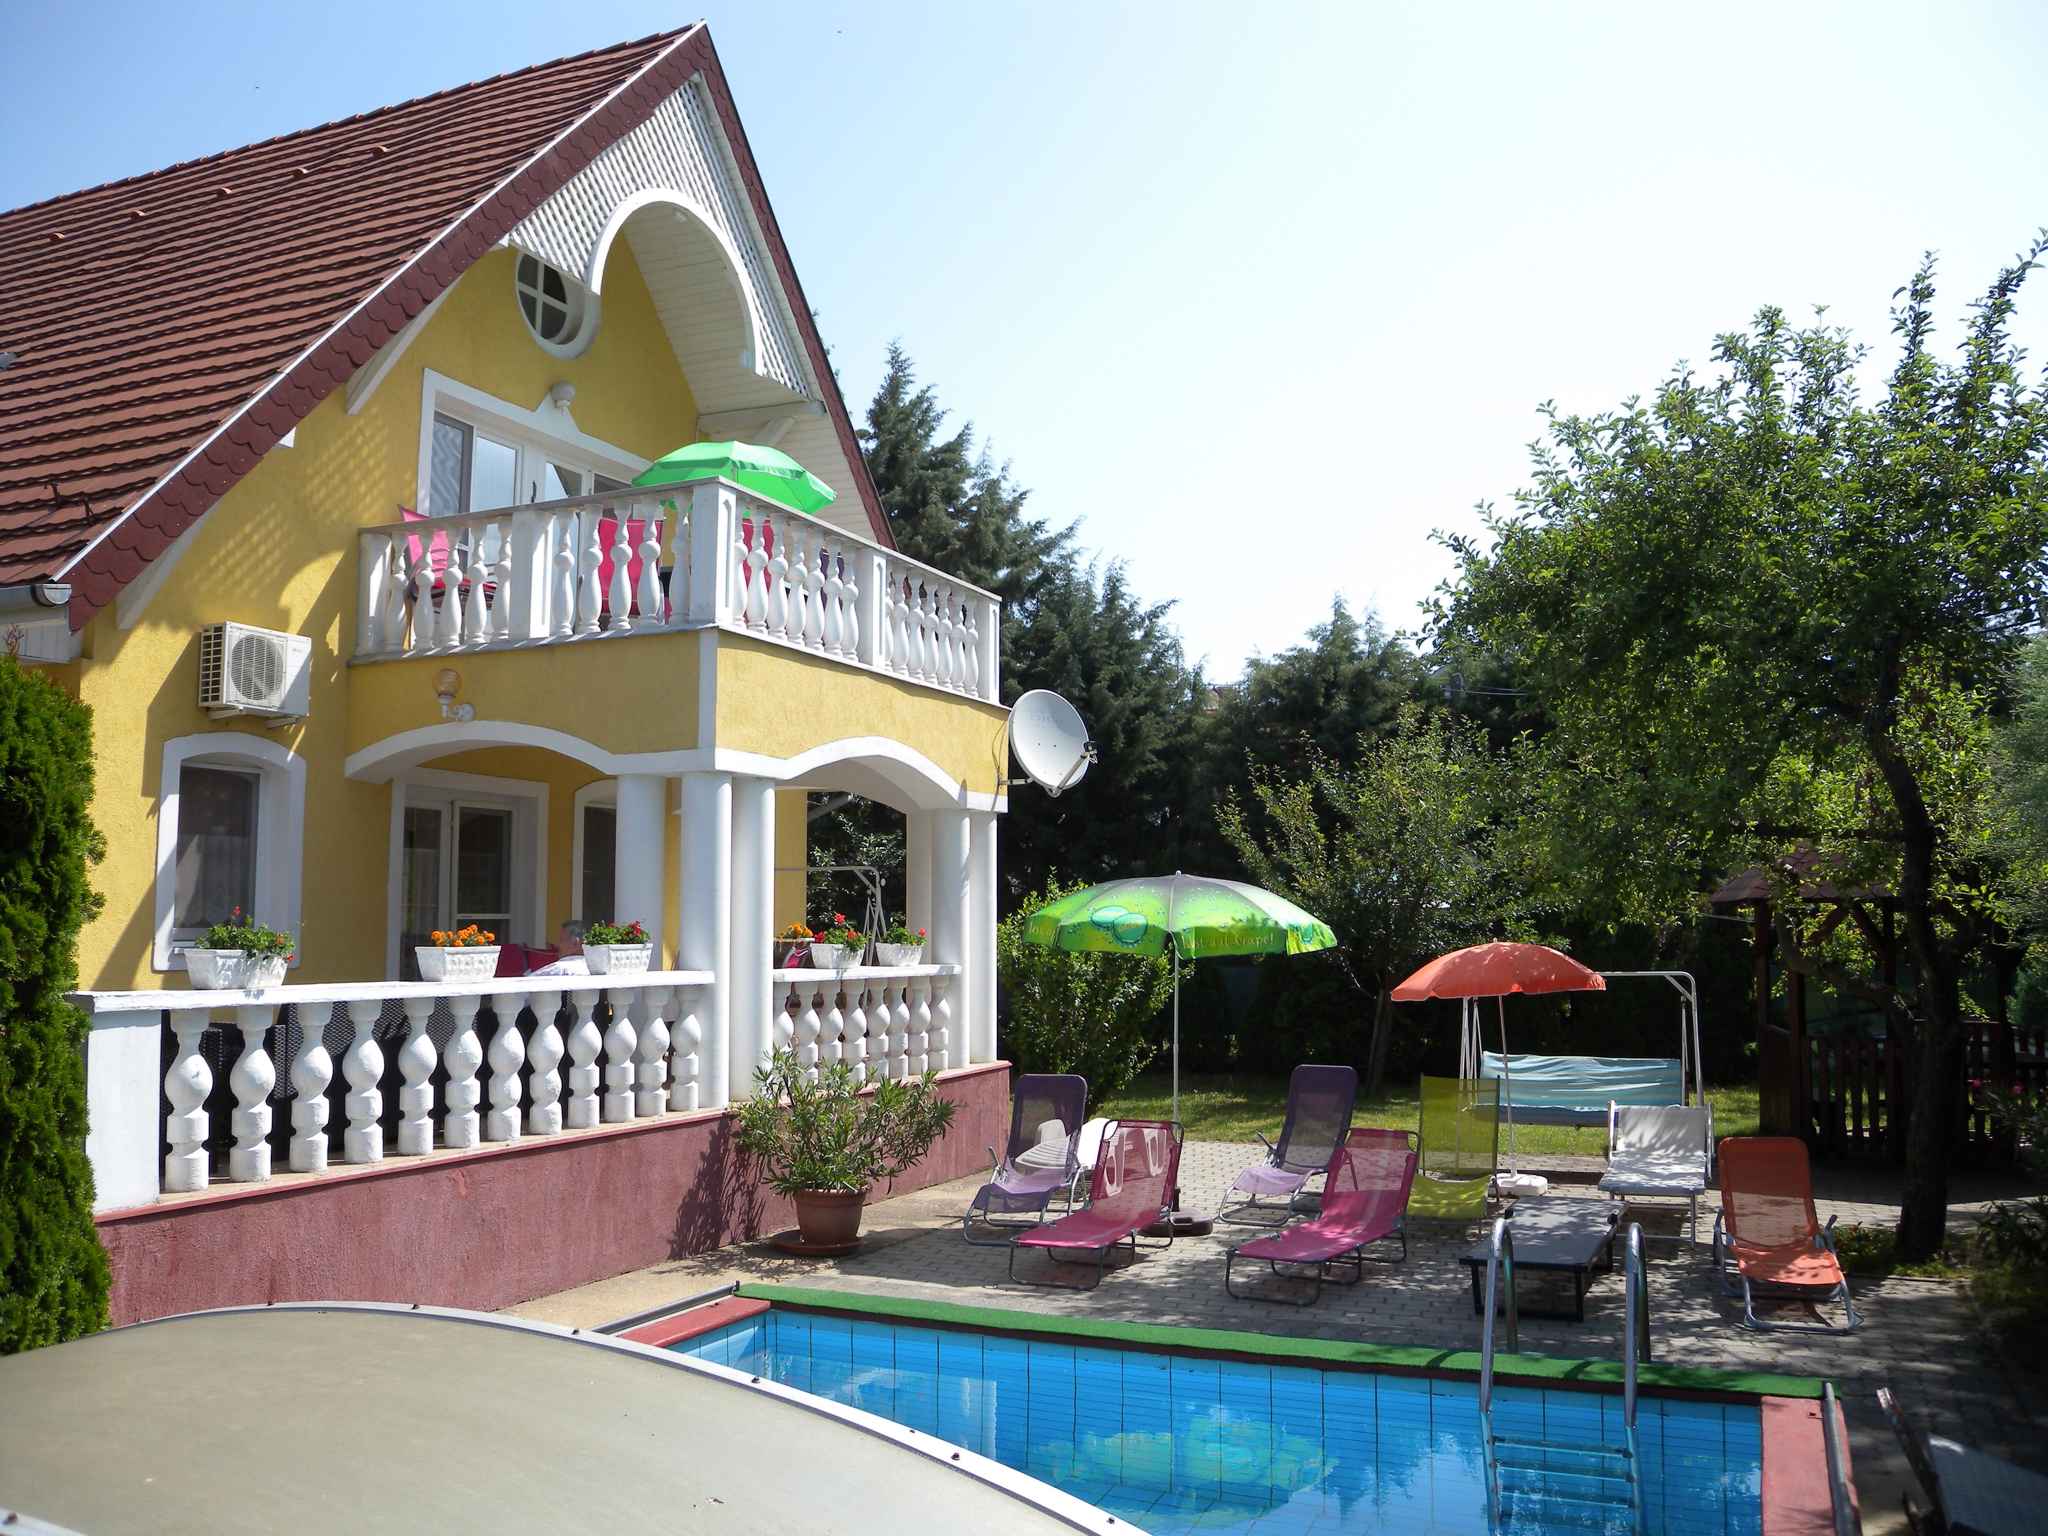 Ferienhaus mit Pool, Klimaanlage und 2 Badezimmer Ferienhaus in Ungarn